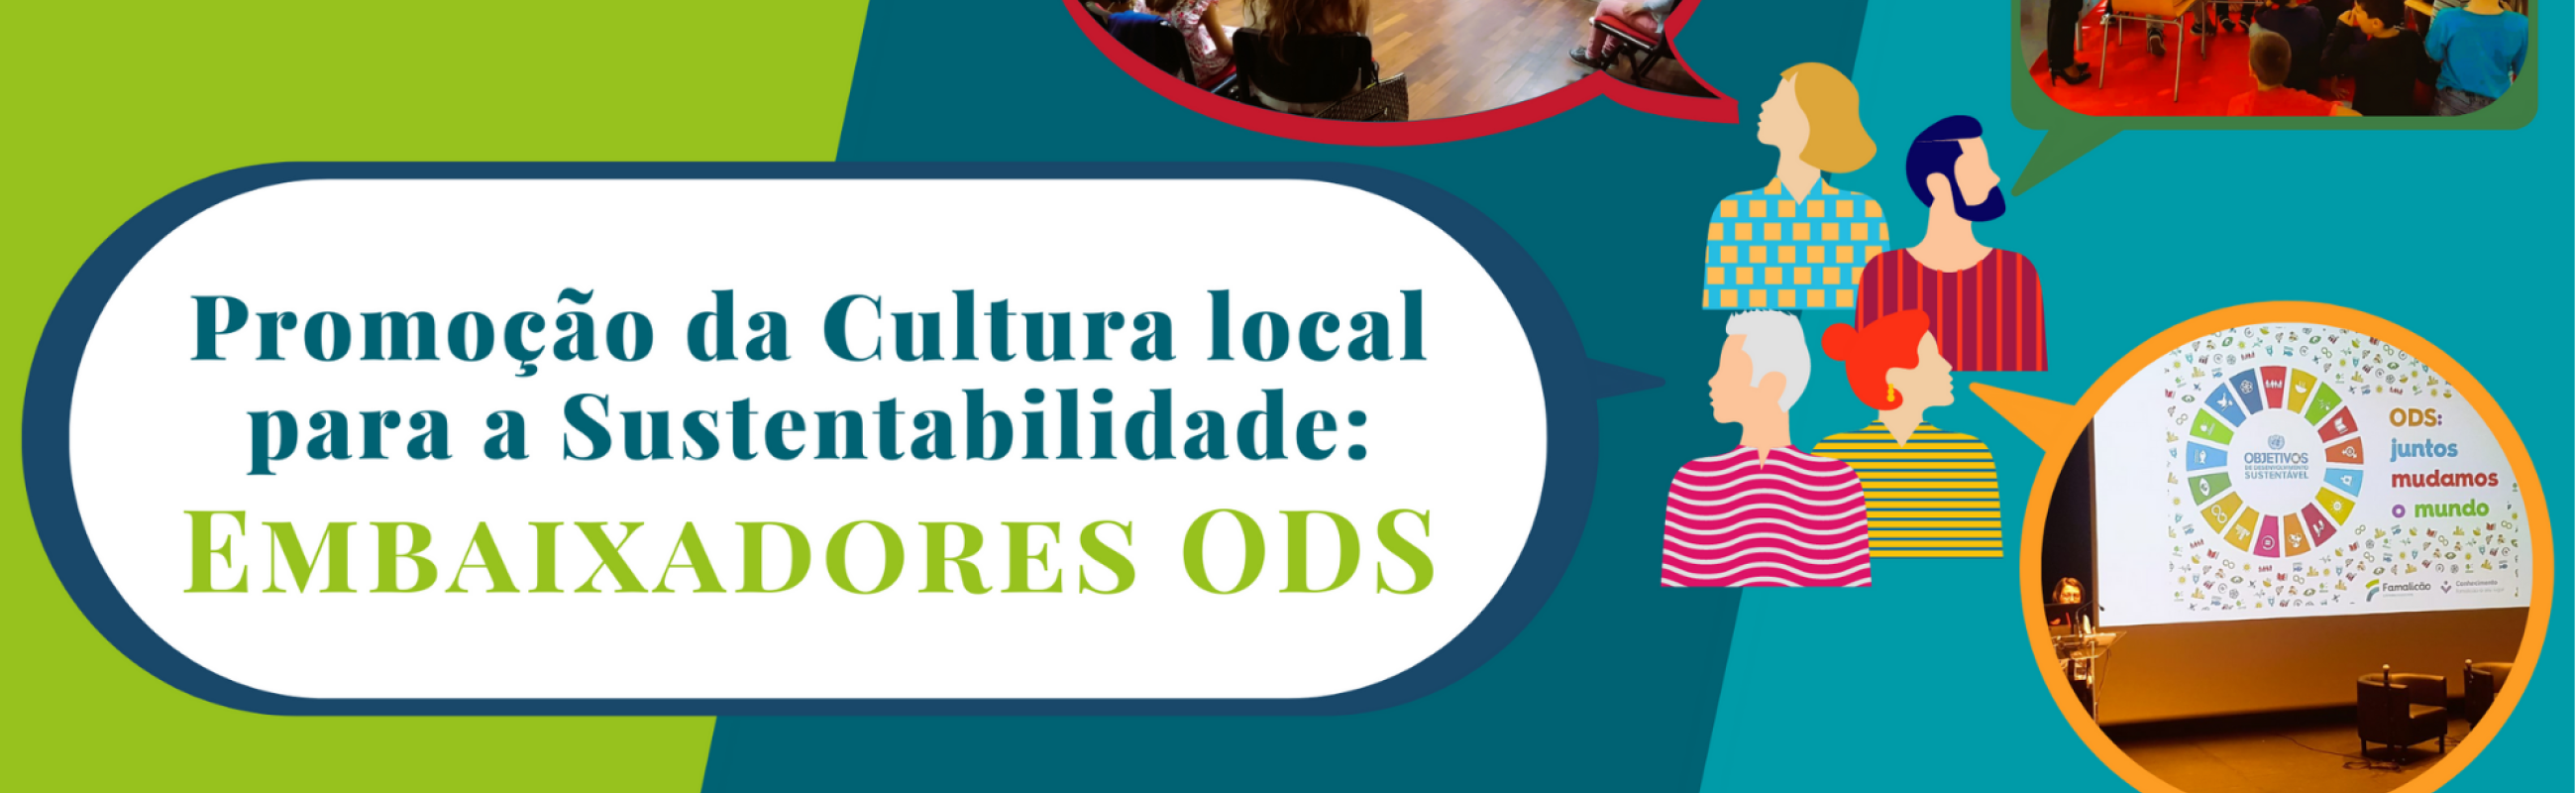 IDL Vila Nova de Famalicão Boas Práticas Embaixadores ODS Promoção da Cultura Local para a Sustentabildade Rede CESOP-Local